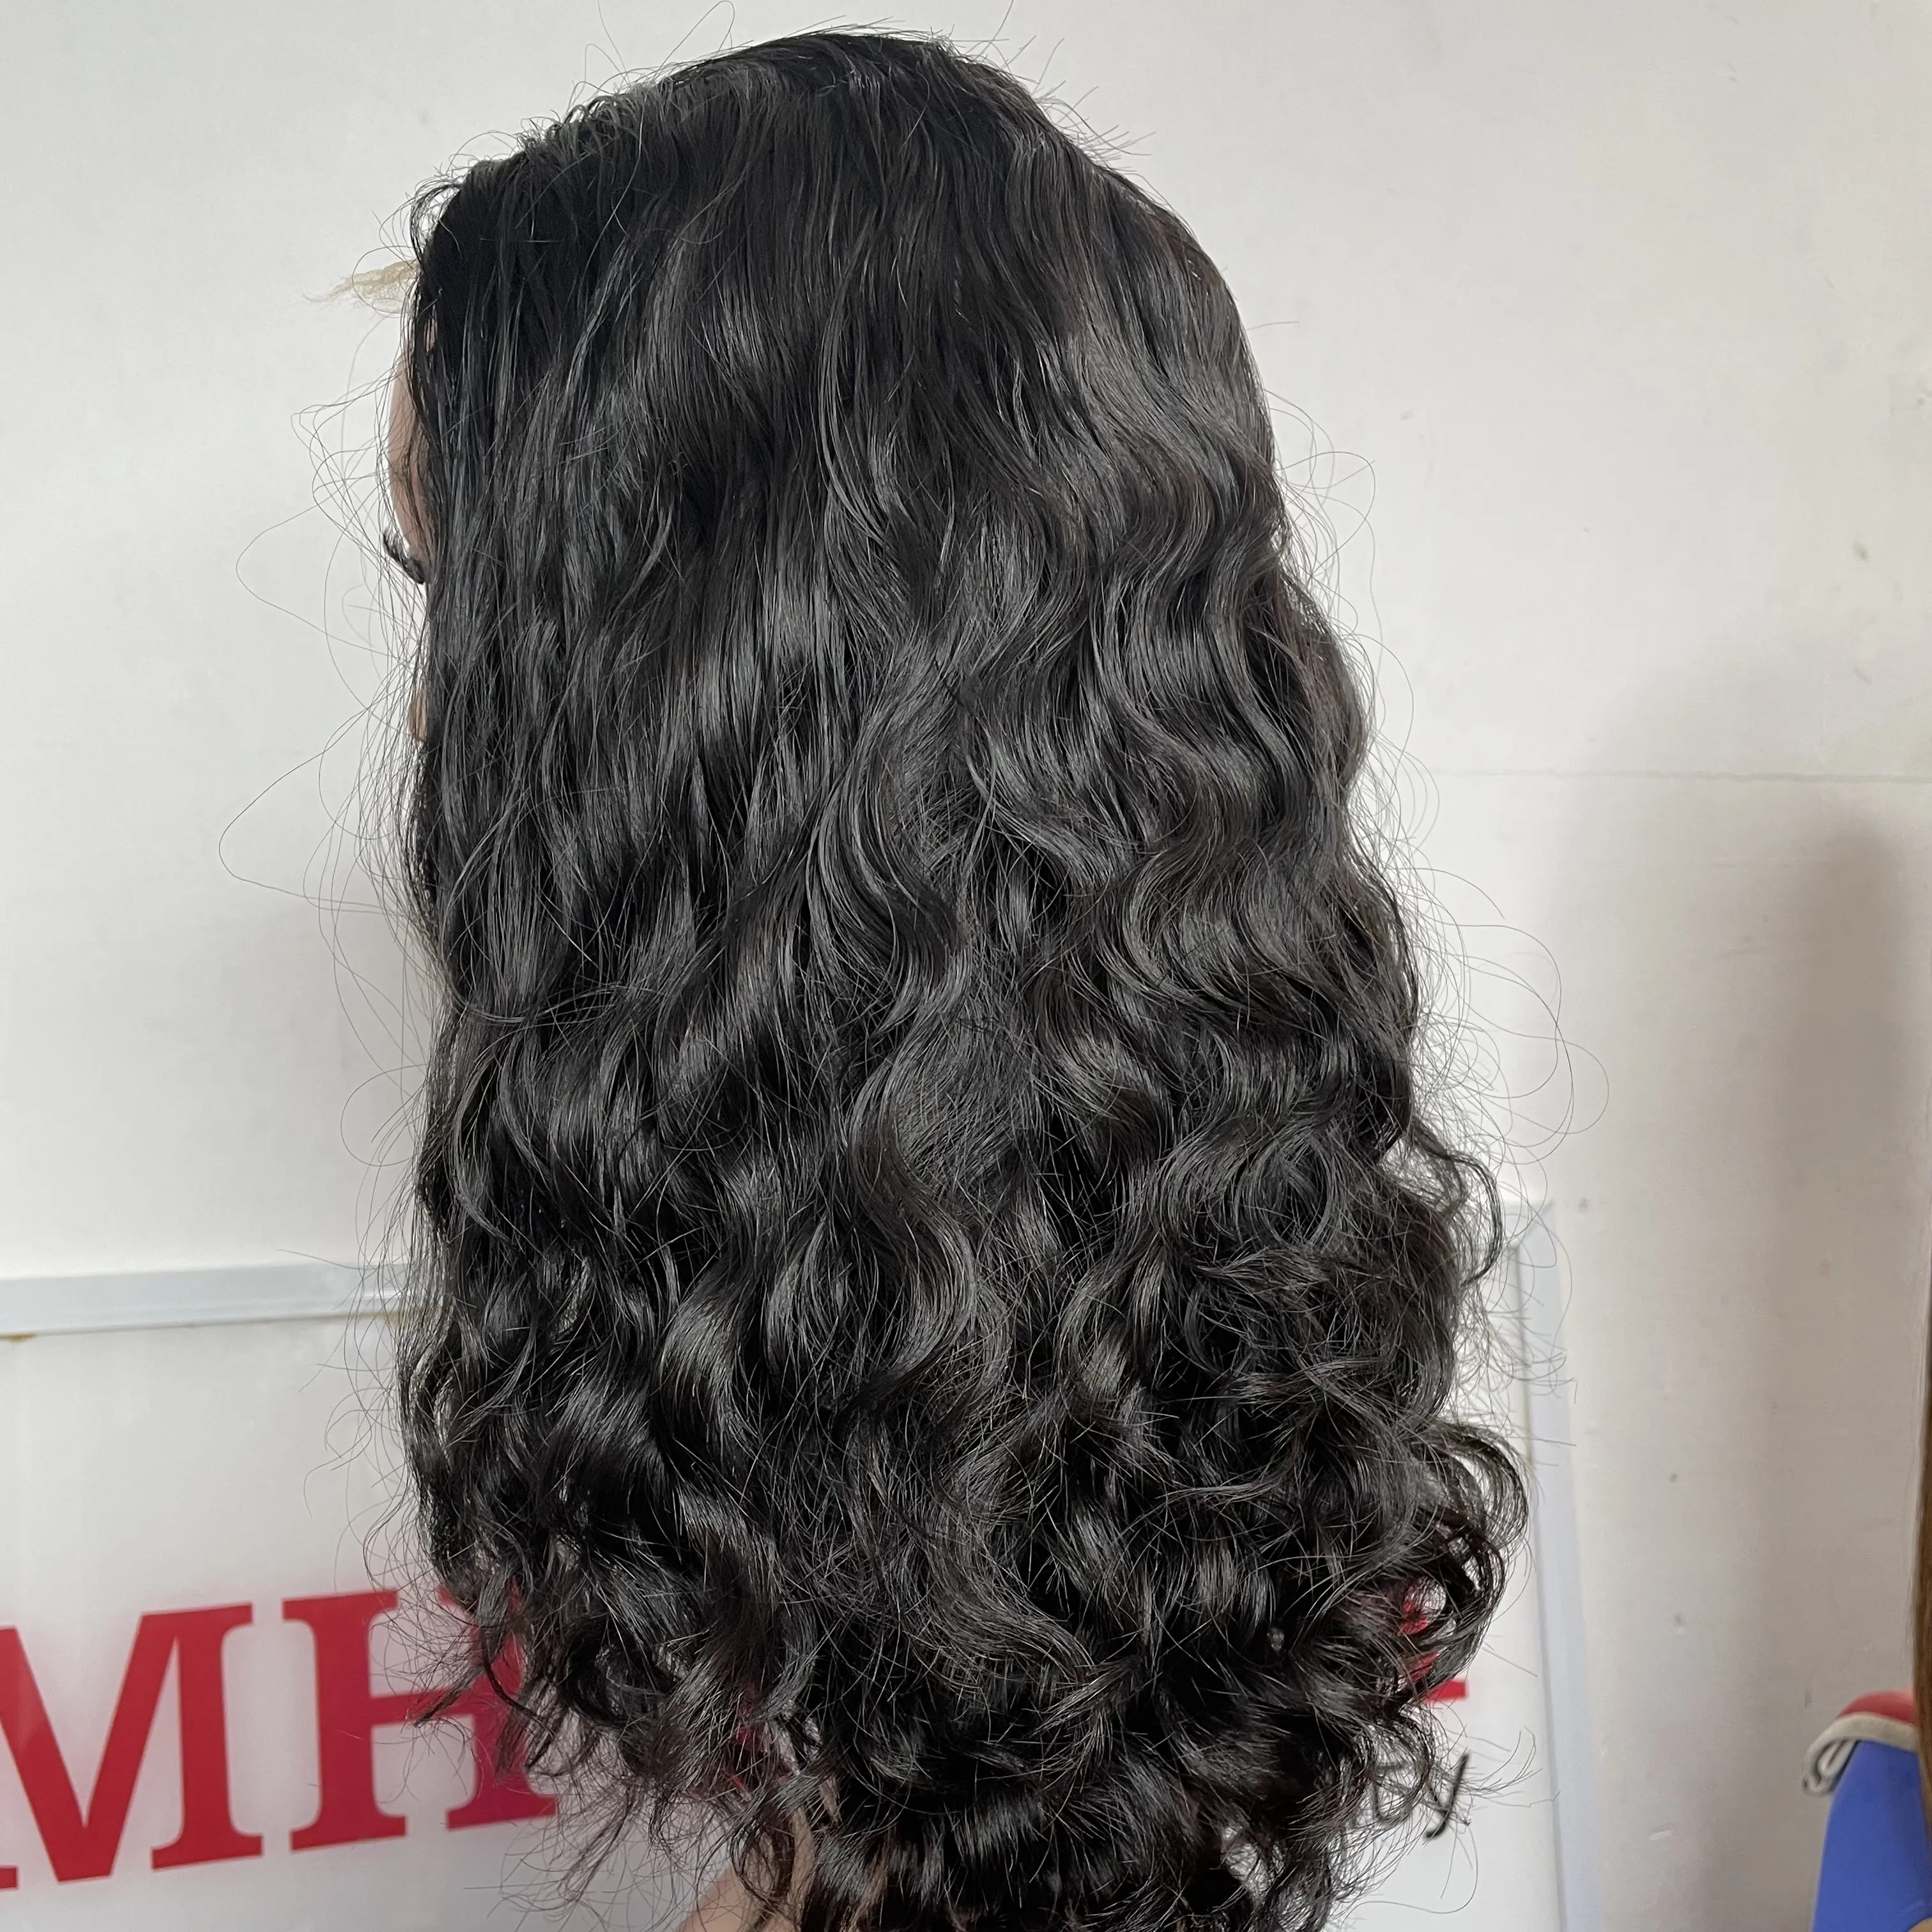 Nguyên liệu tóc con người lượn sóng tóc giả từ 8-34 inch bán buôn Trinh Nữ bó Việt dệt Remy phần mở rộng tóc con người